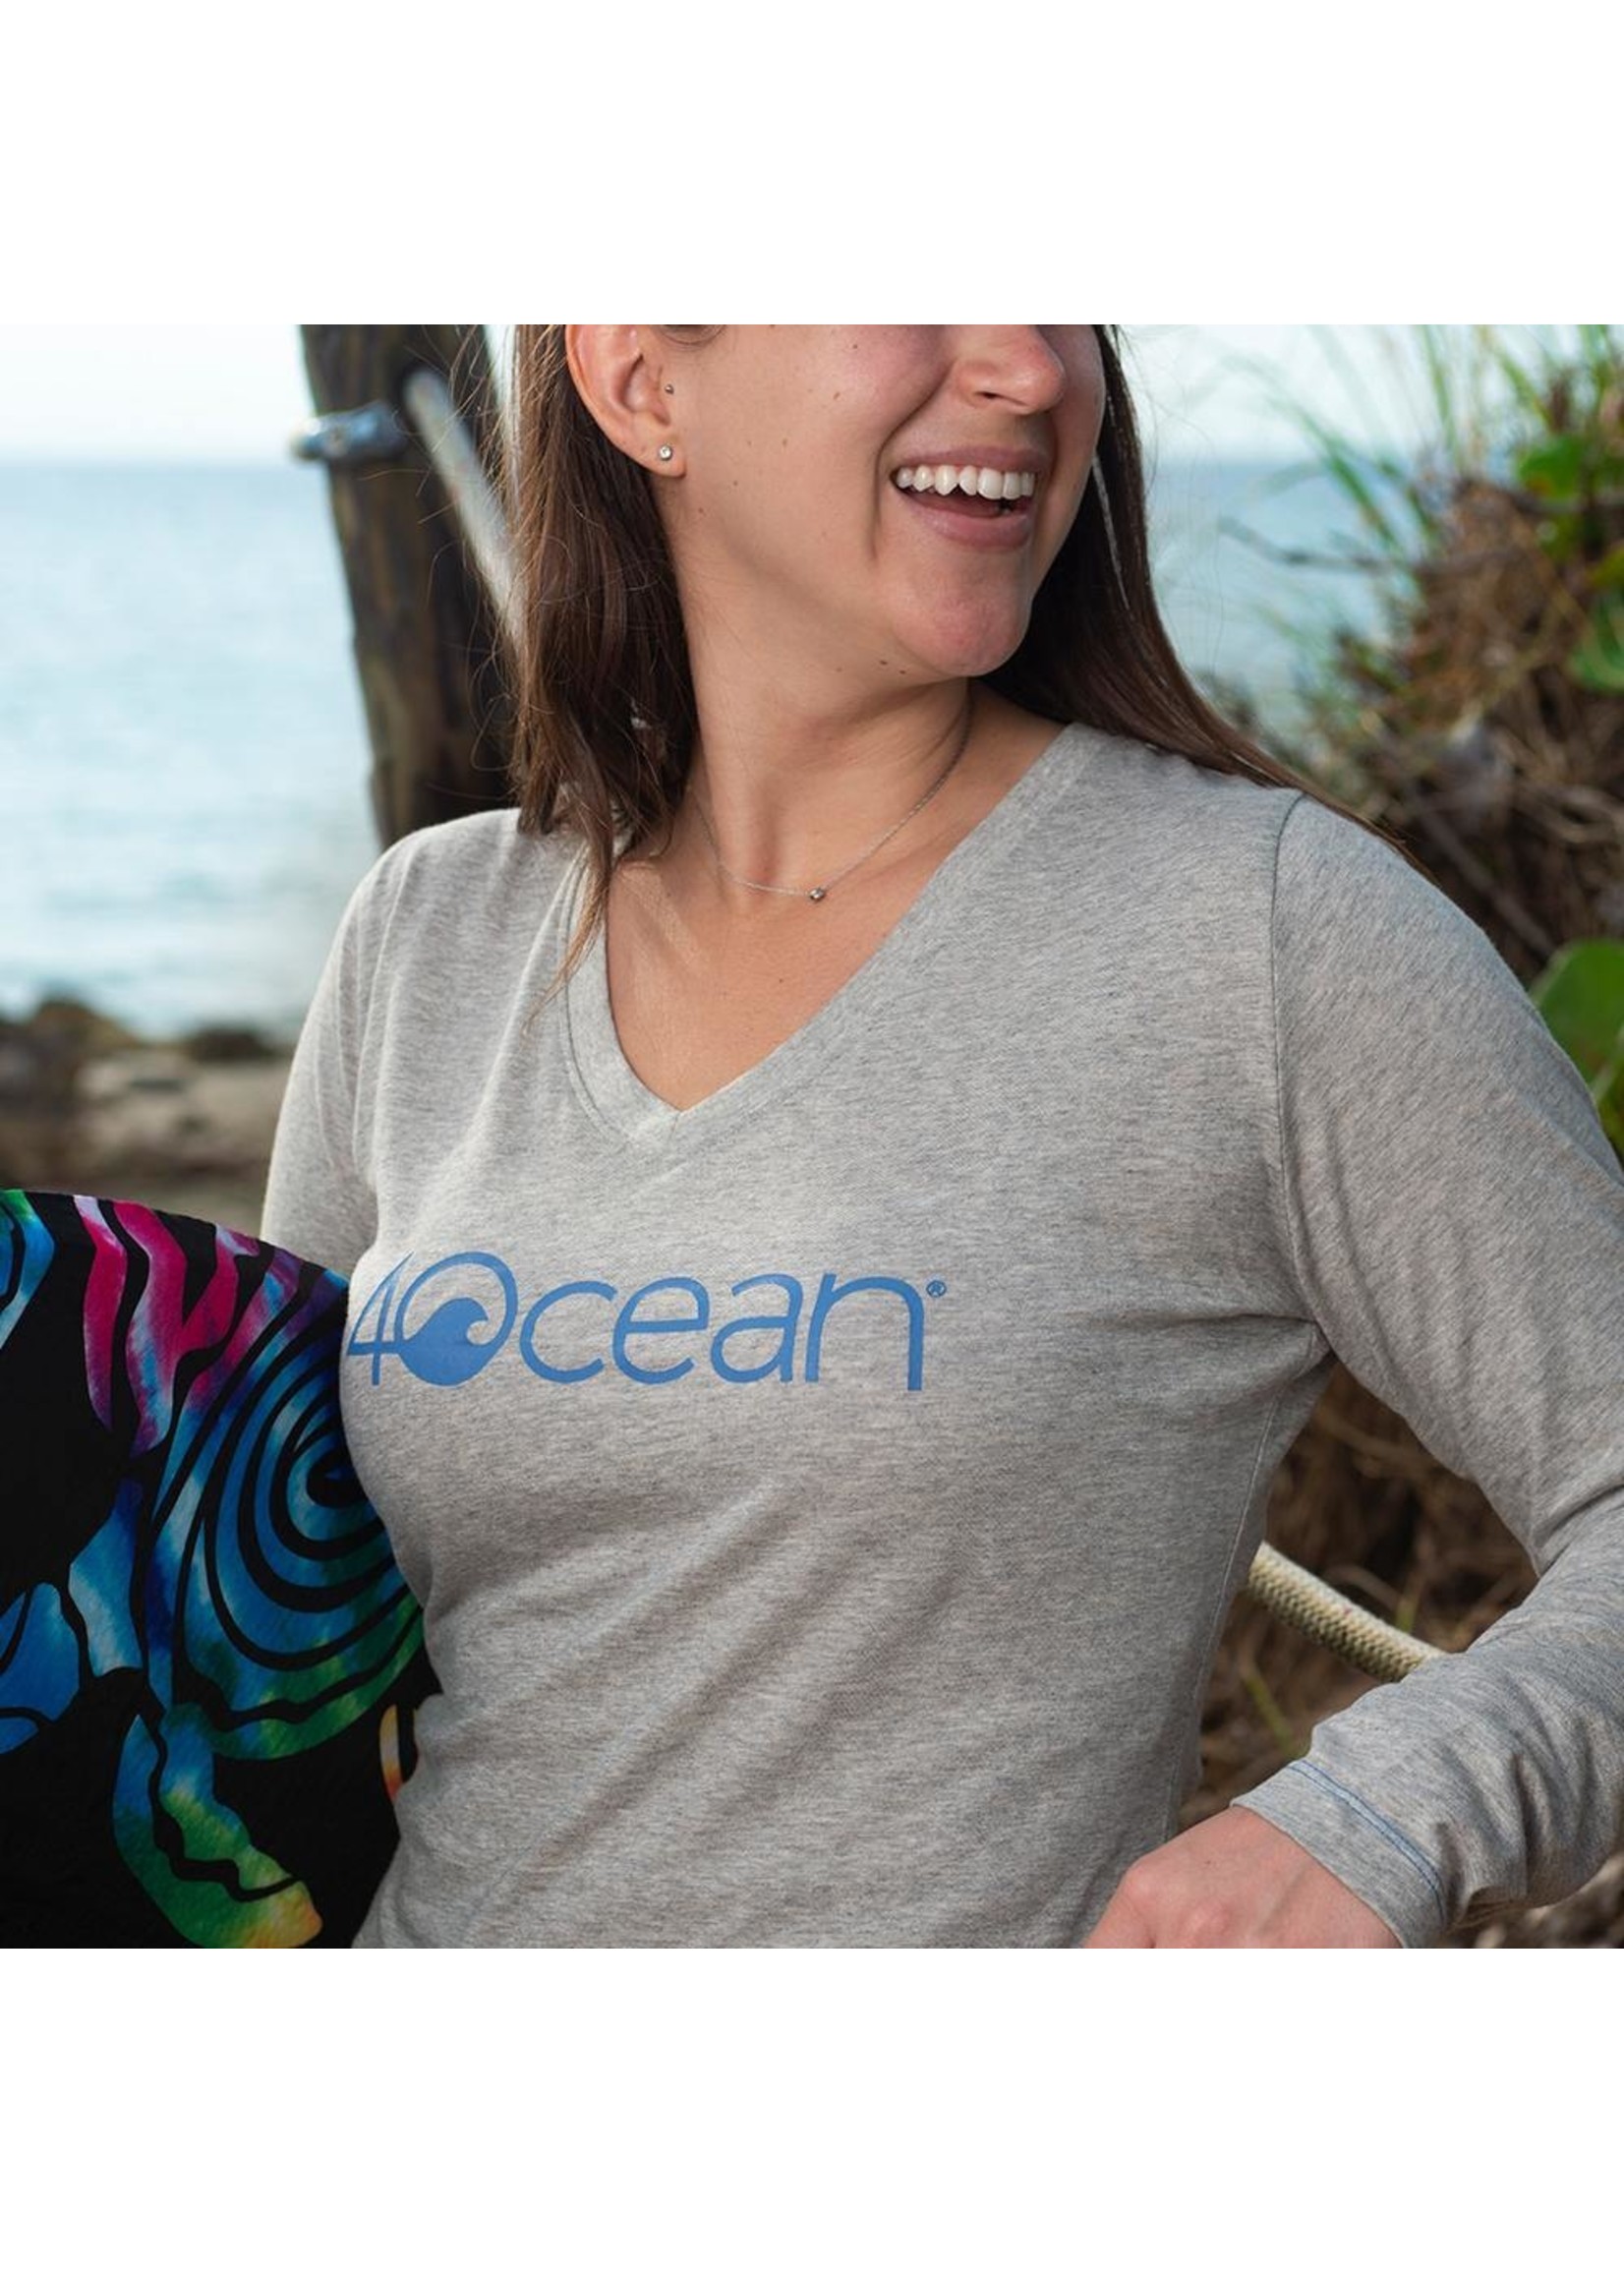 4Ocean Women's 4ocean Logo Long Sleeve V-Neck